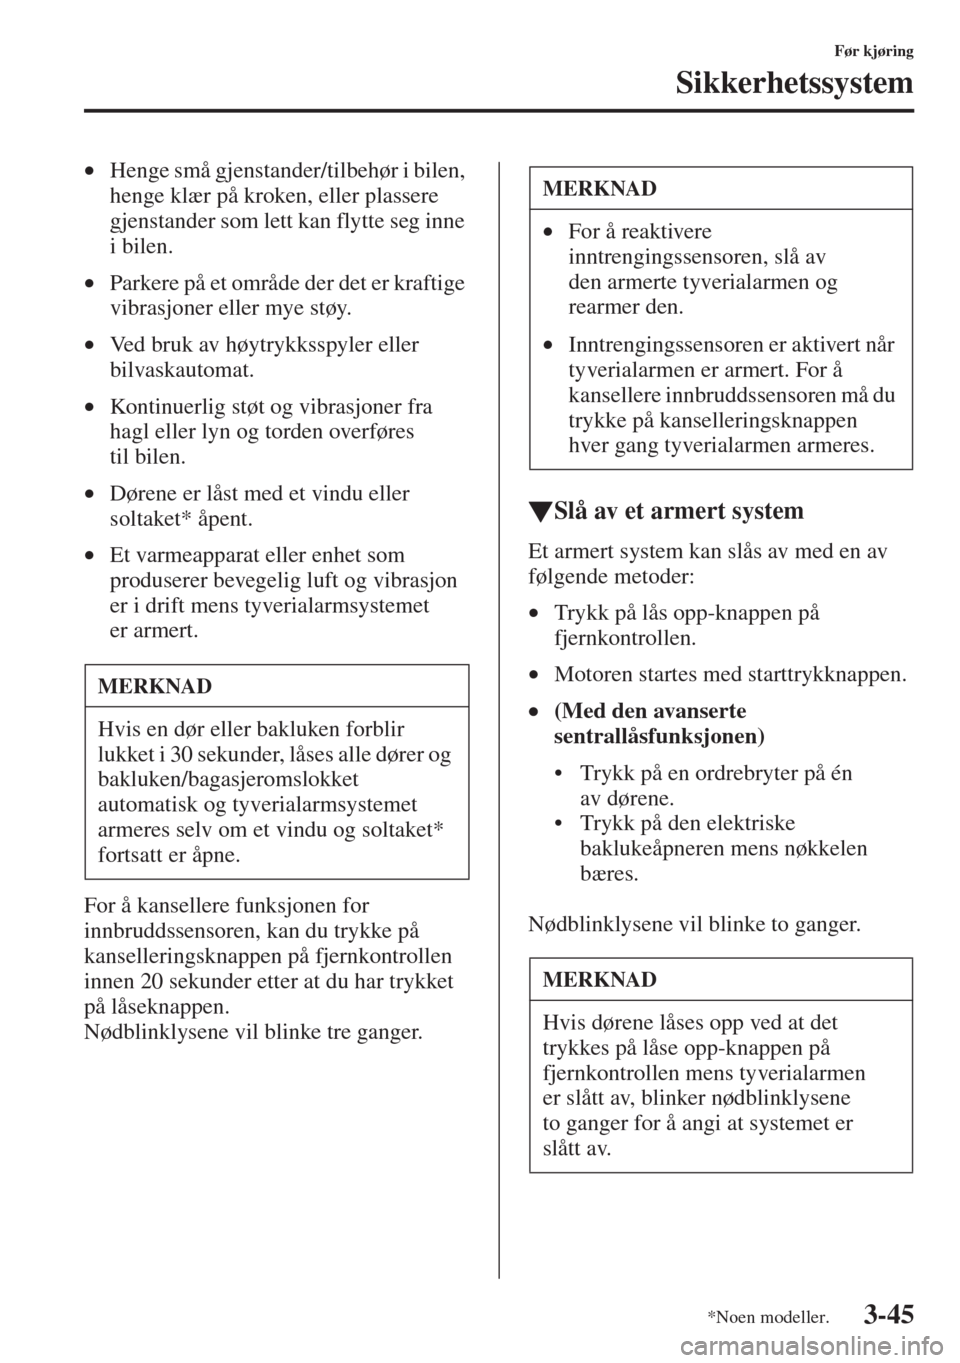 MAZDA MODEL CX-5 2013  Brukerhåndbok (in Norwegian) 3-45
Før kjøring
Sikkerhetssystem
•Henge små gjenstander/tilbehør i bilen, 
henge klær på kroken, eller plassere 
gjenstander som lett kan flytte seg inne 
i bilen.
•Parkere på et område d